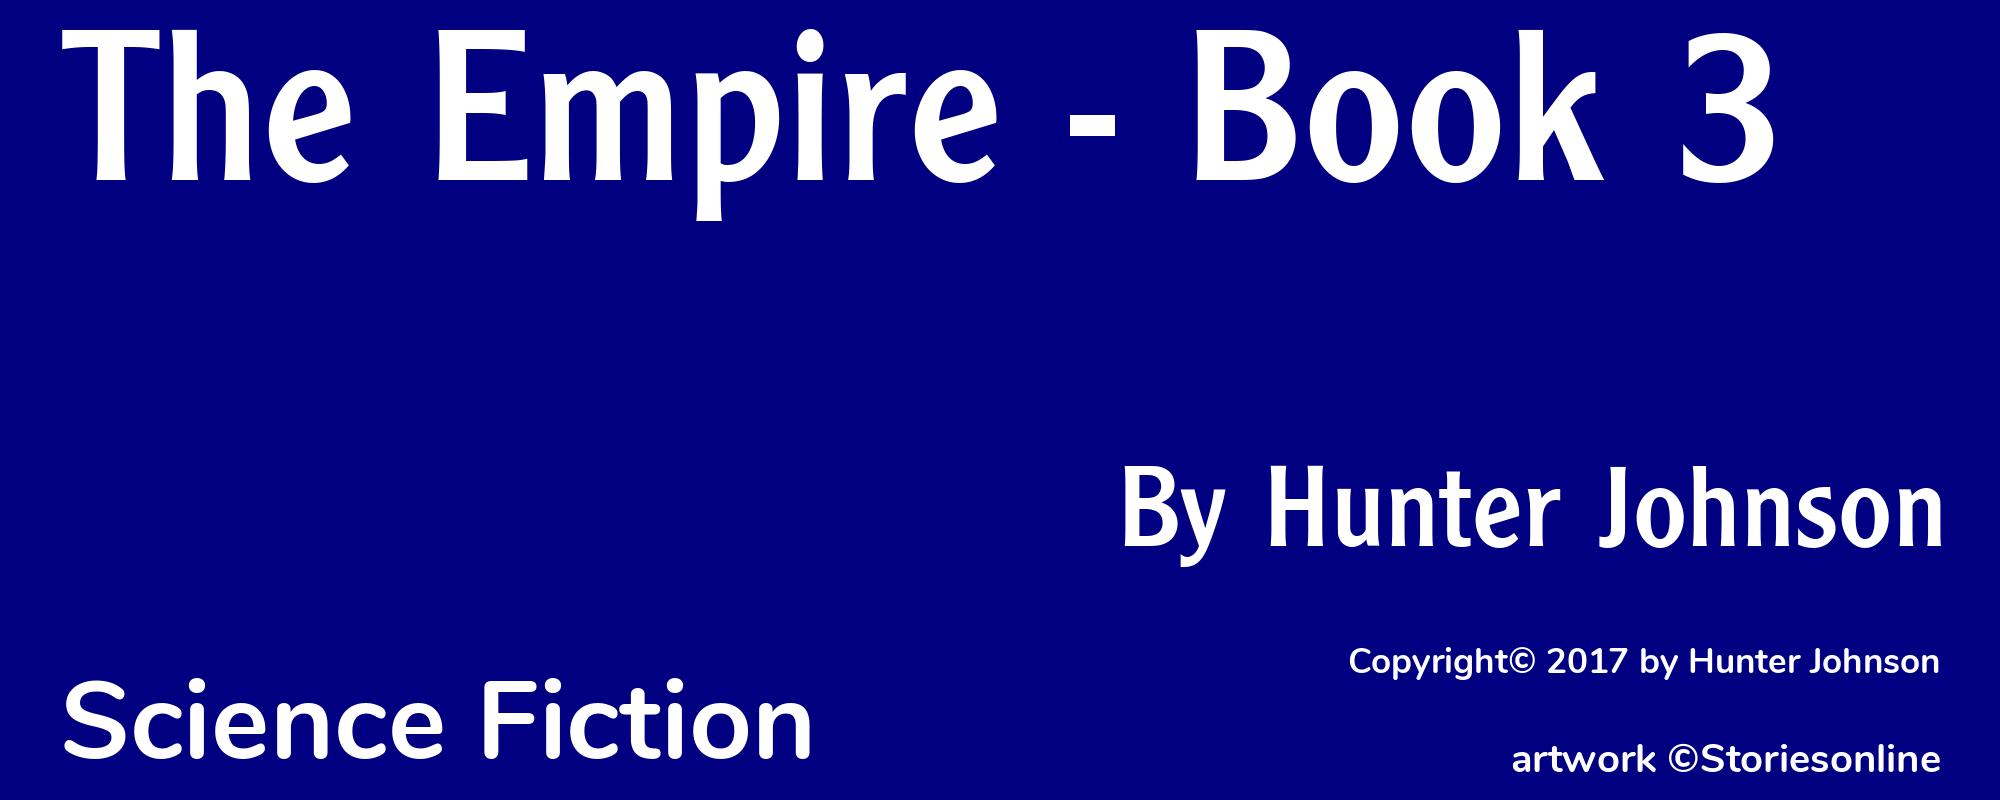 The Empire - Book 3 - Cover